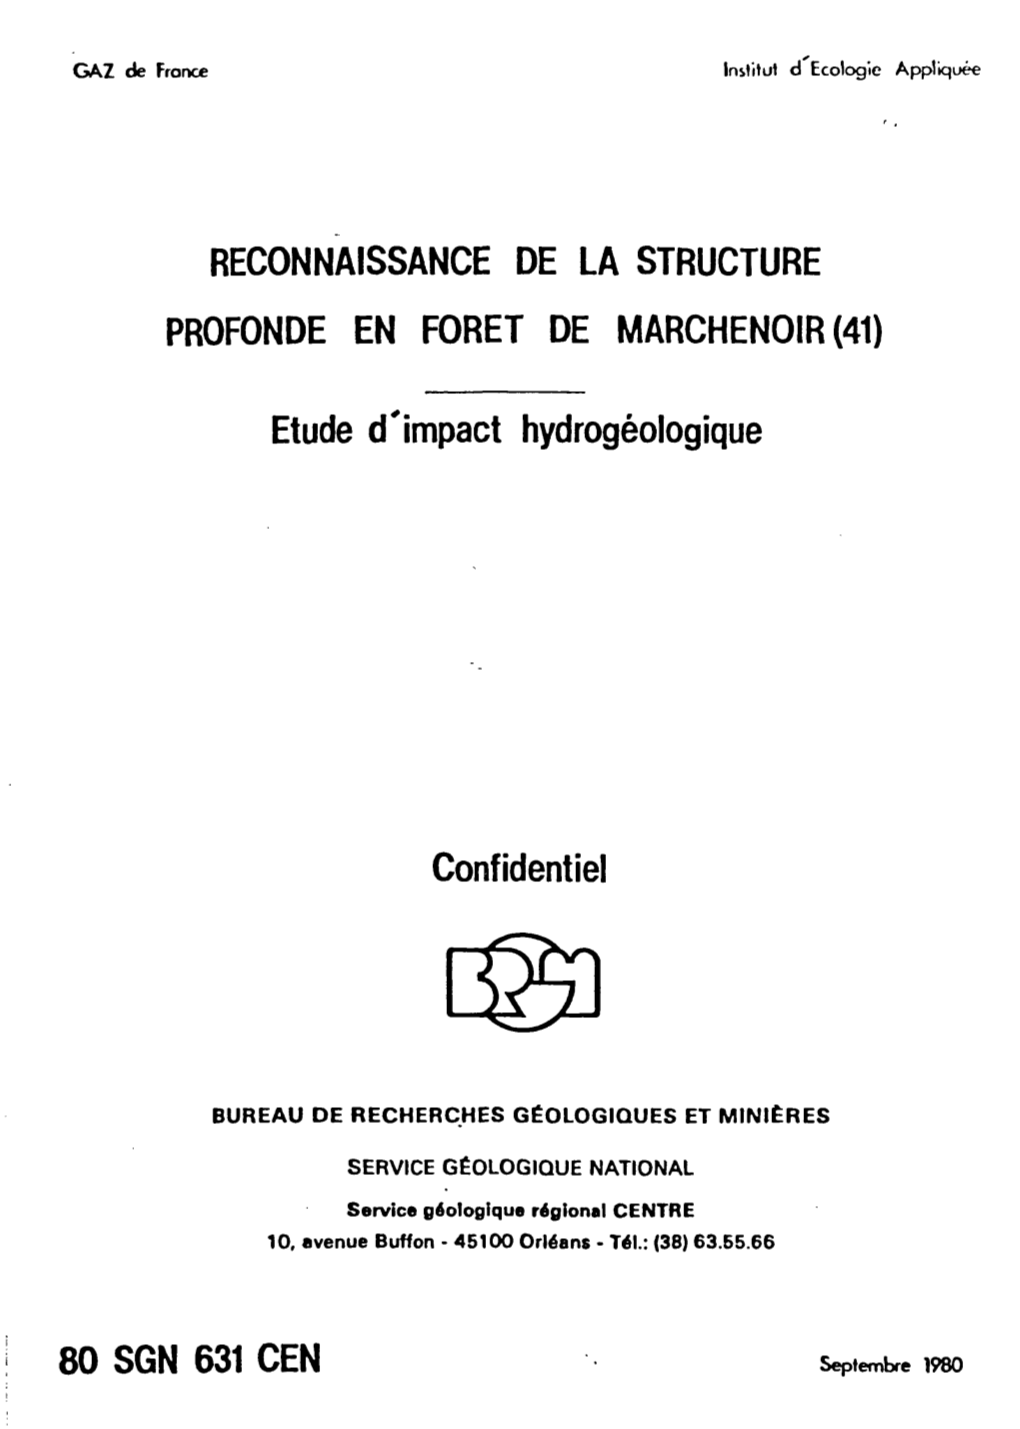 Reconnaissance De La Structure Profonde En Foret De Marchenoir (41)